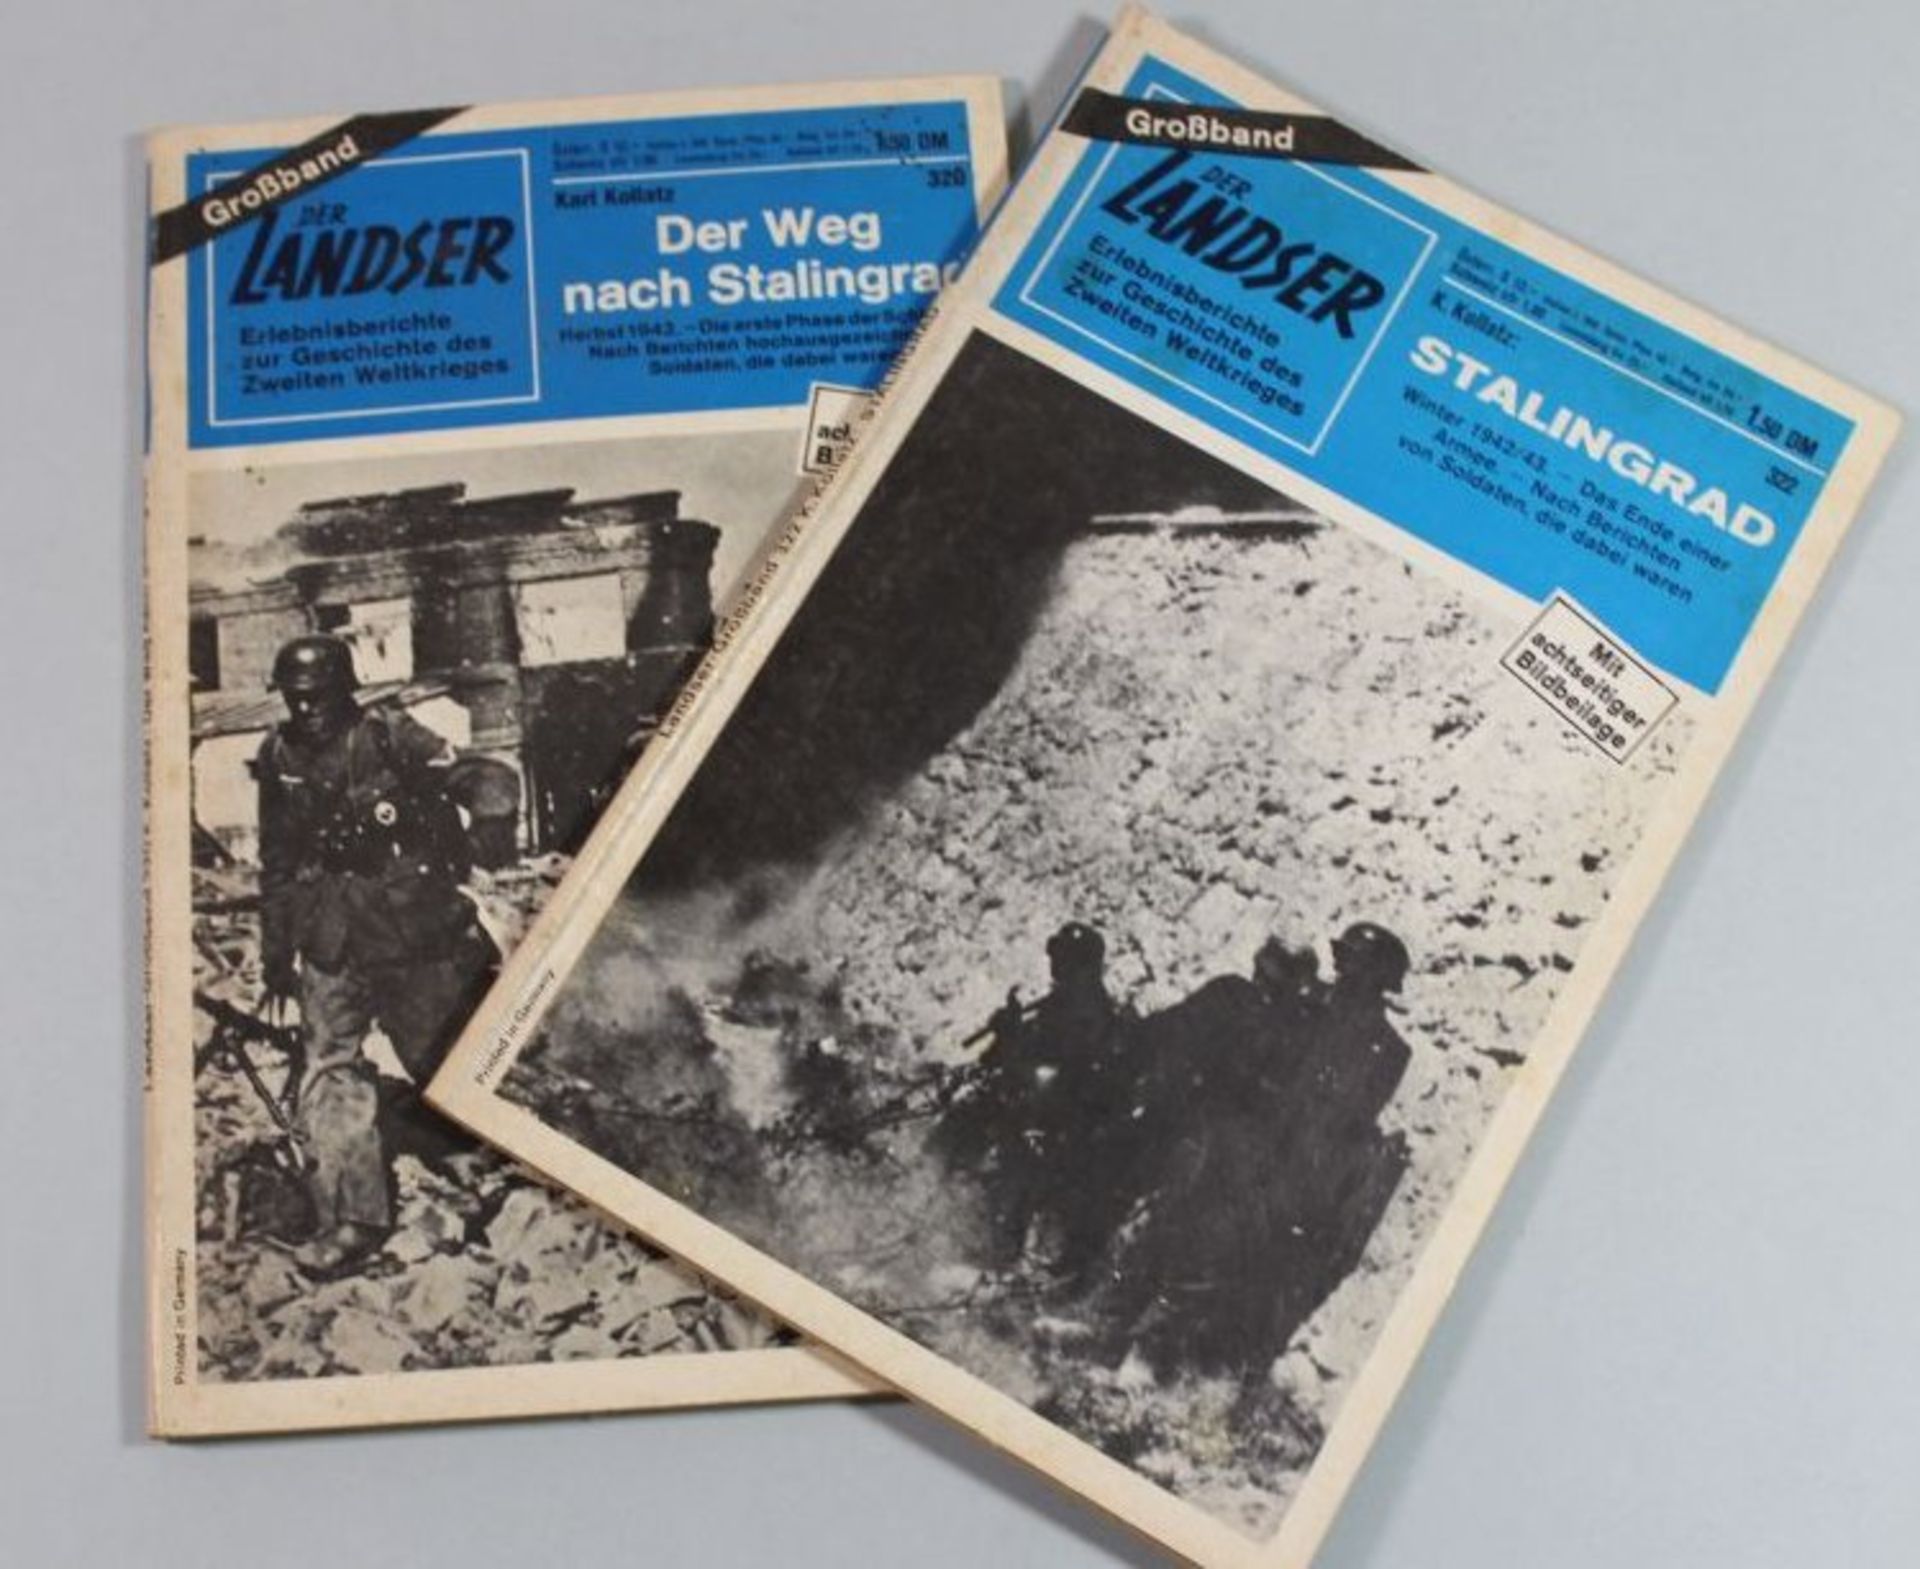 2x Ausgaben der Landser, Thema Stalingrad.